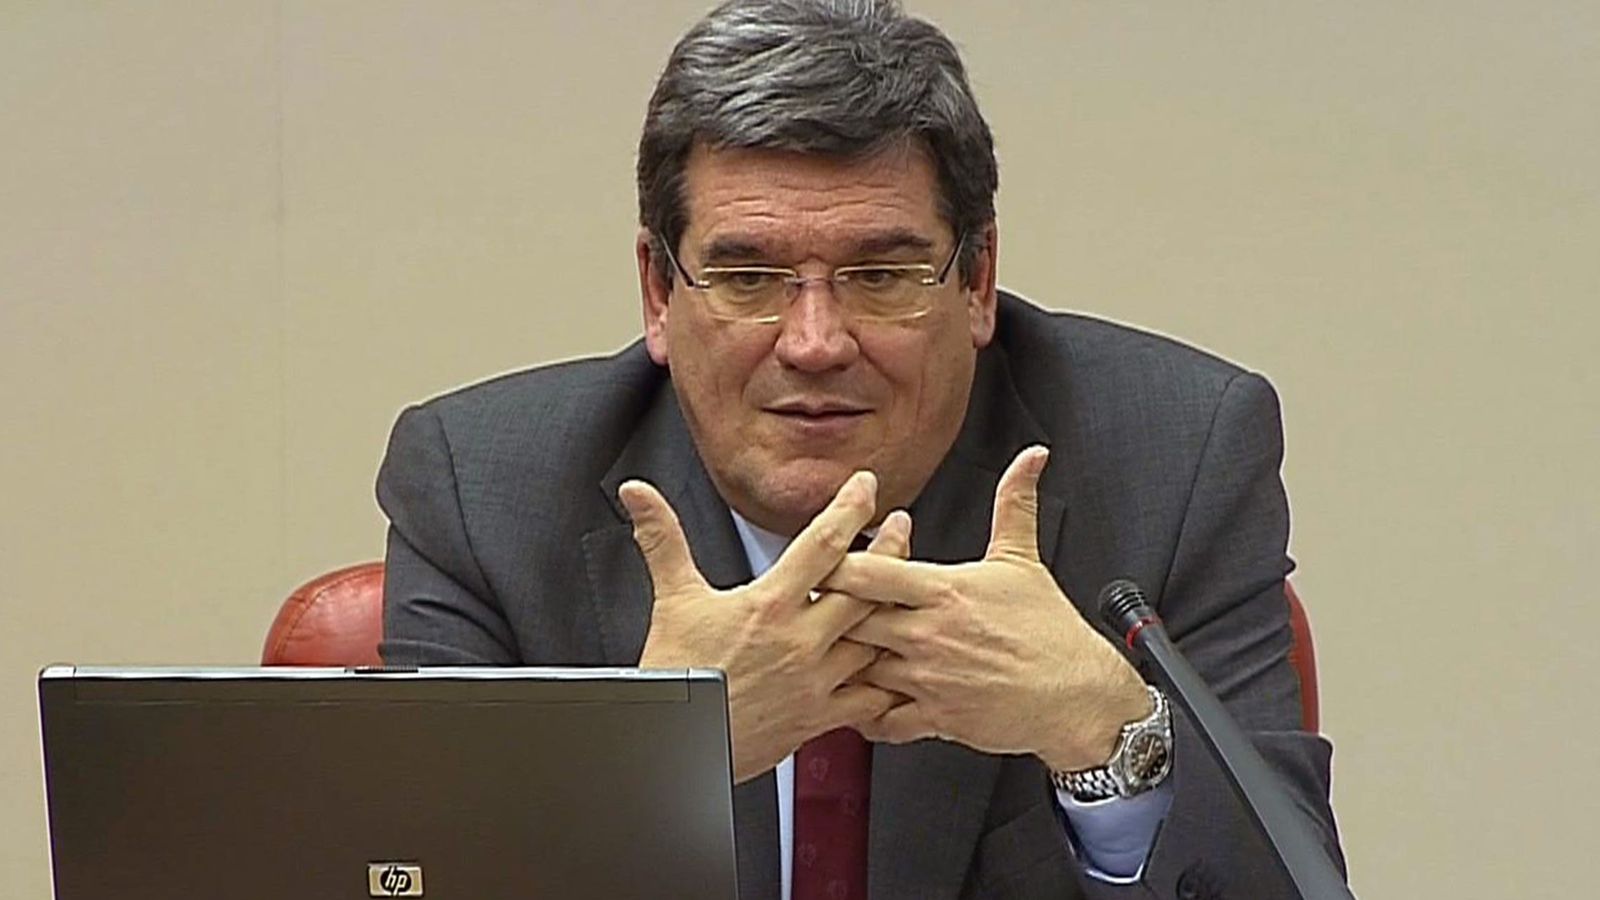 Foto: El presidente de la Autoridad Independiente de Responsabilidad Fiscal (AIReF), José Luis Escrivá. (EFE)